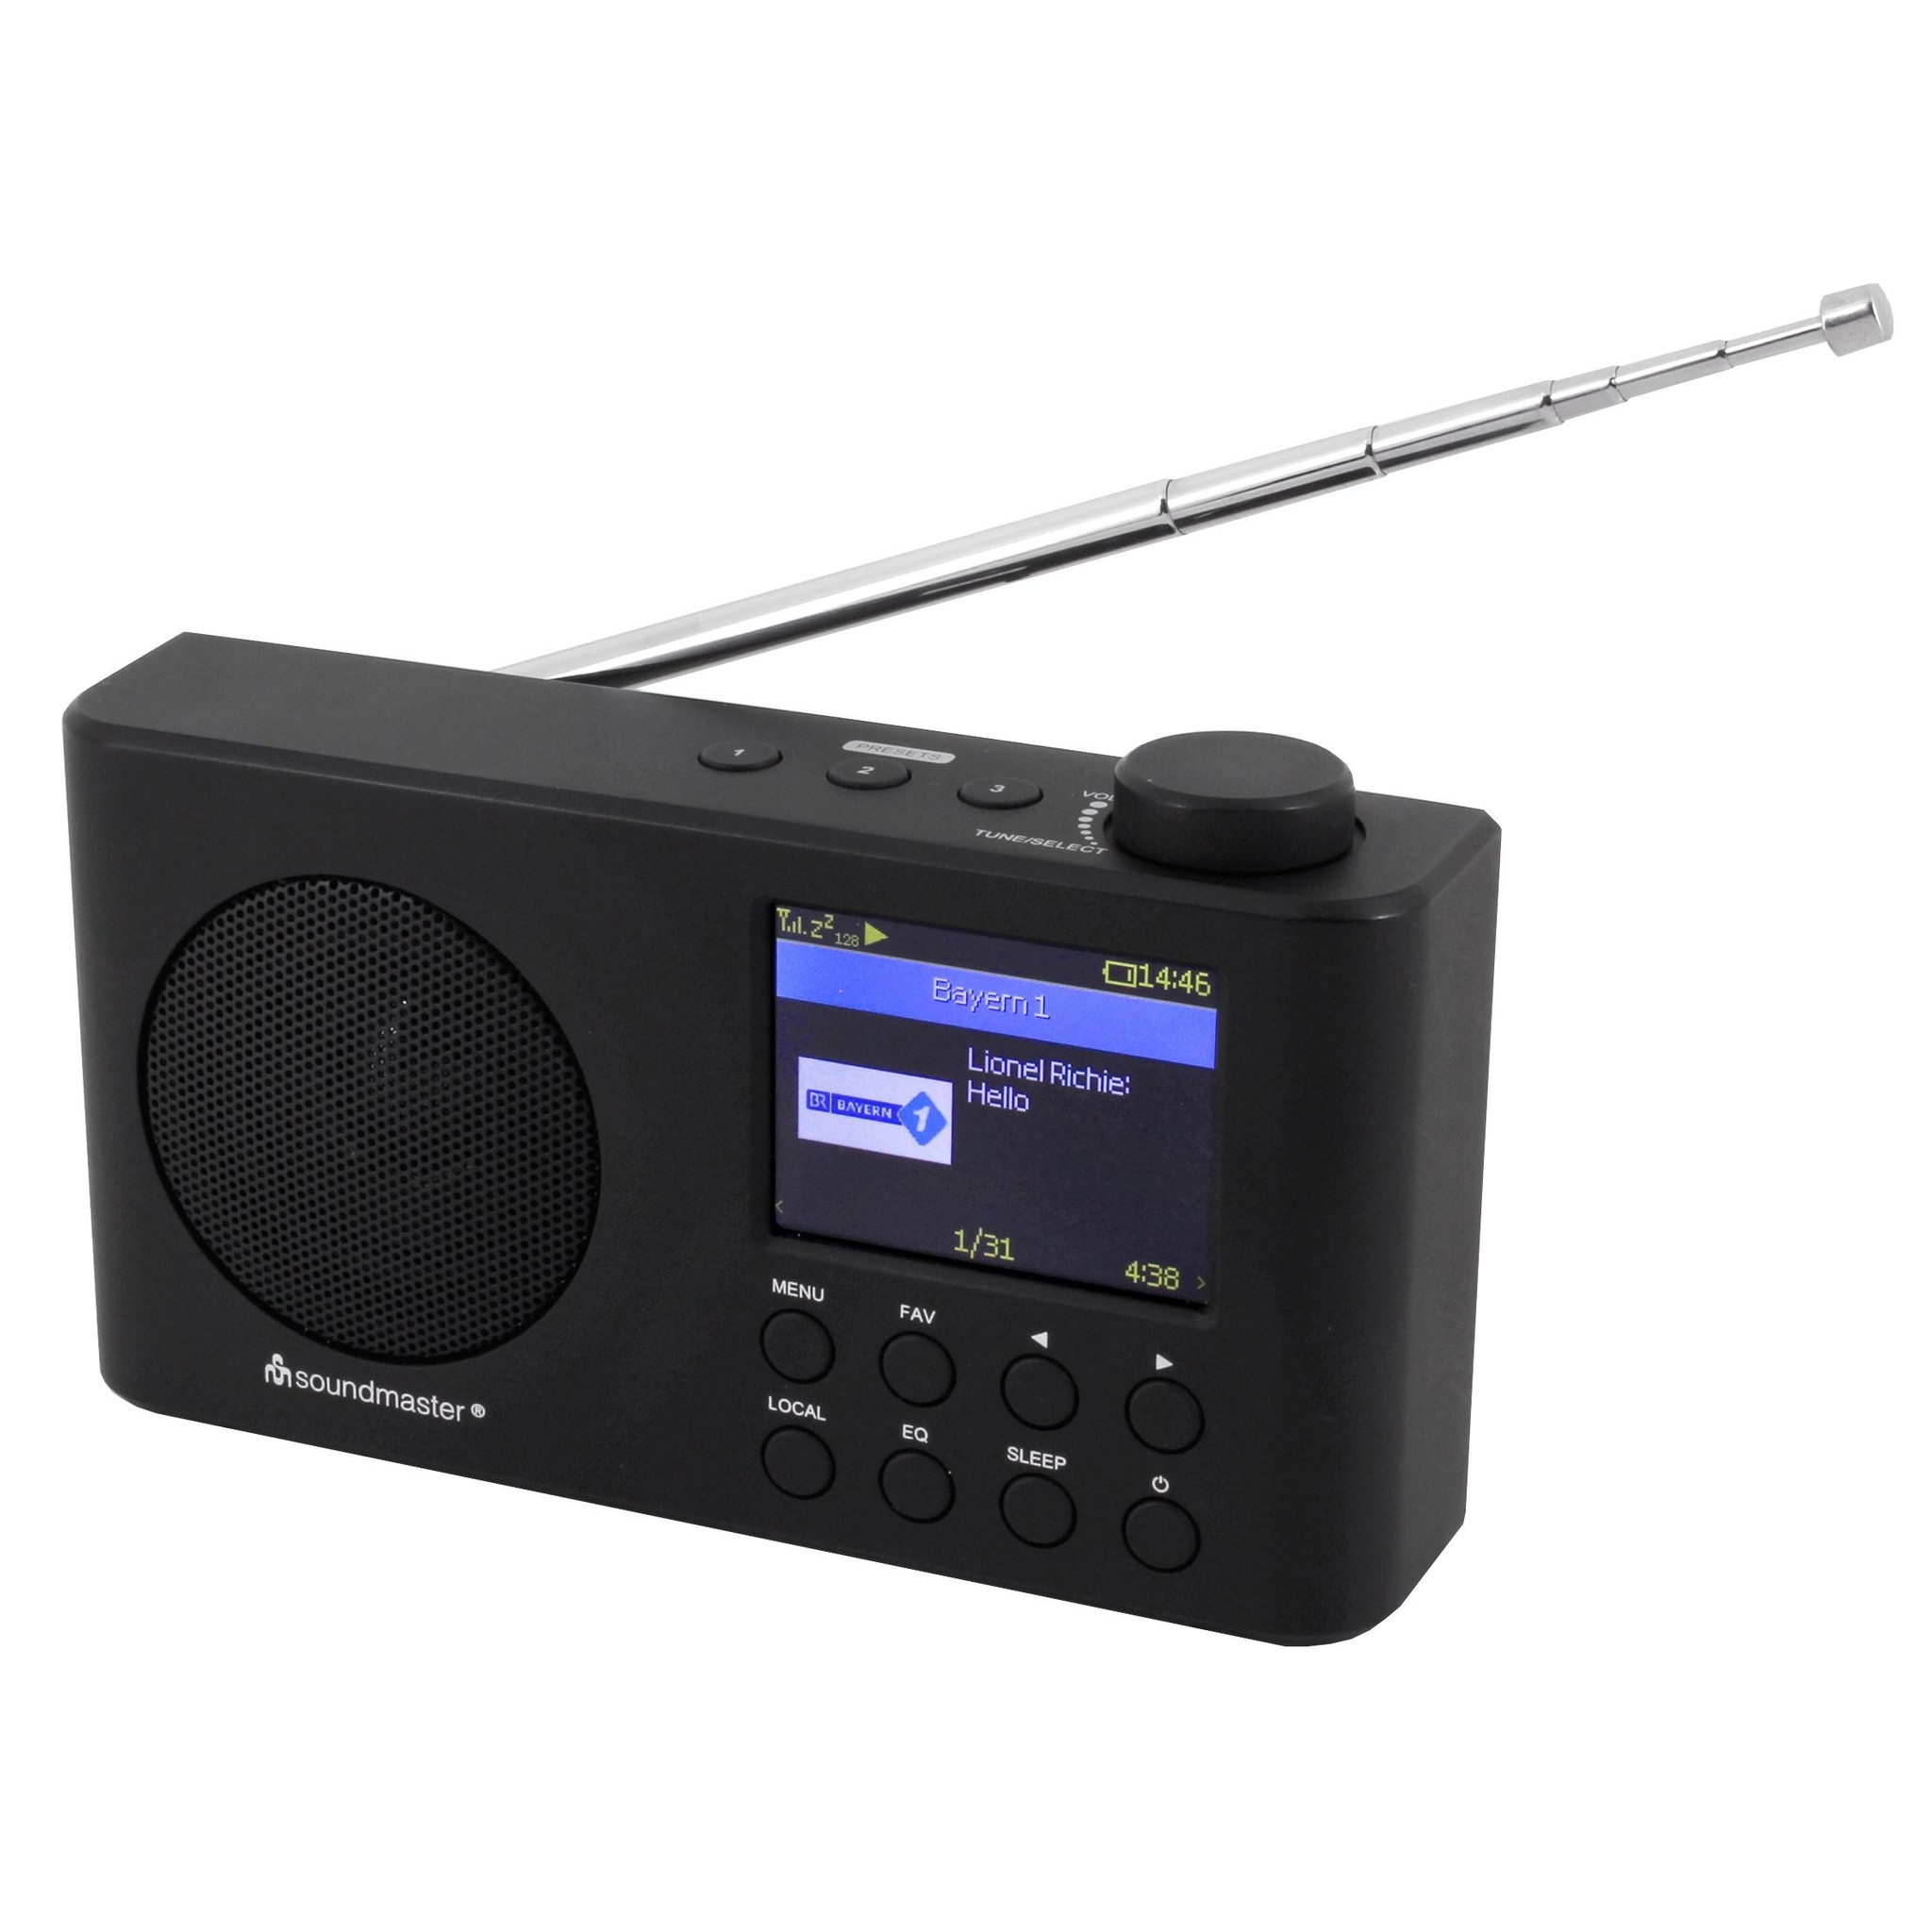 mate De neiging hebben Pilfer Portable radio kopen? Bestel nu de Soundmaster IR6500SW bij Maxtotaal! -  Maxtotaal